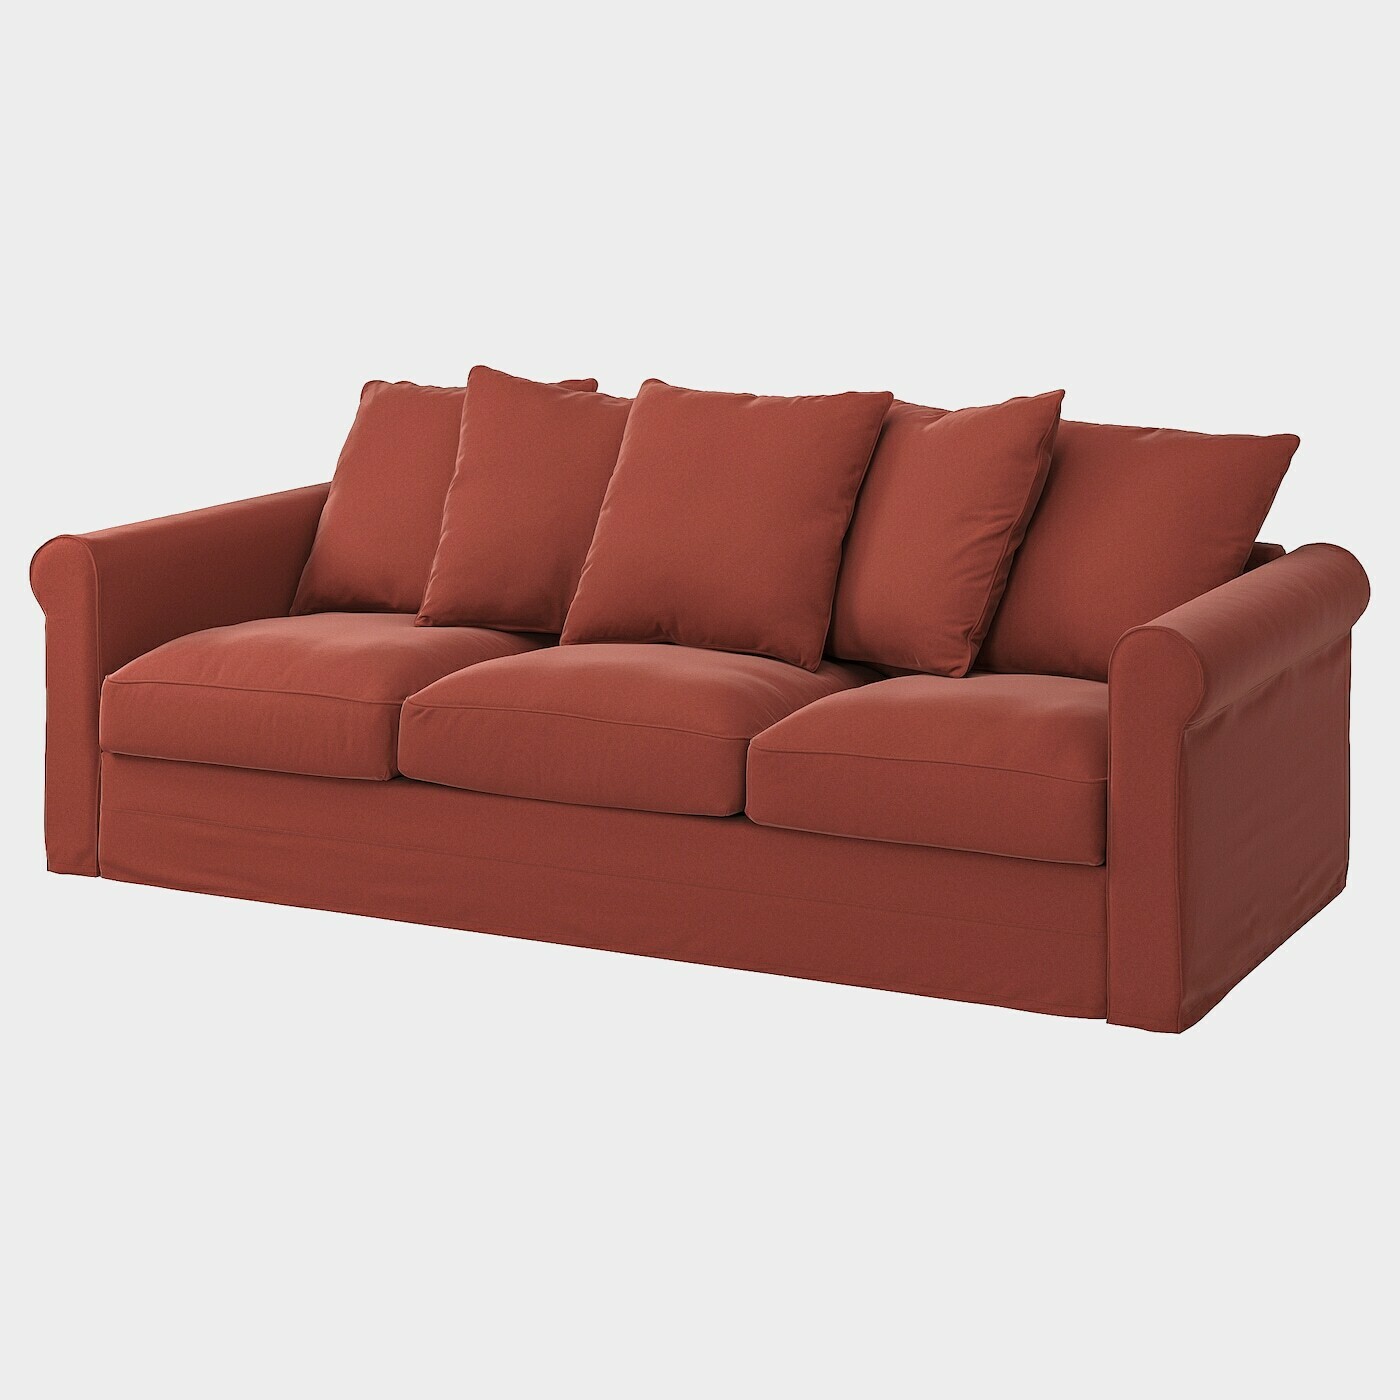 GRÖNLID Bezug 3er-Sofa  -  - Möbel Ideen für dein Zuhause von Home Trends. Möbel Trends von Social Media Influencer für dein Skandi Zuhause.